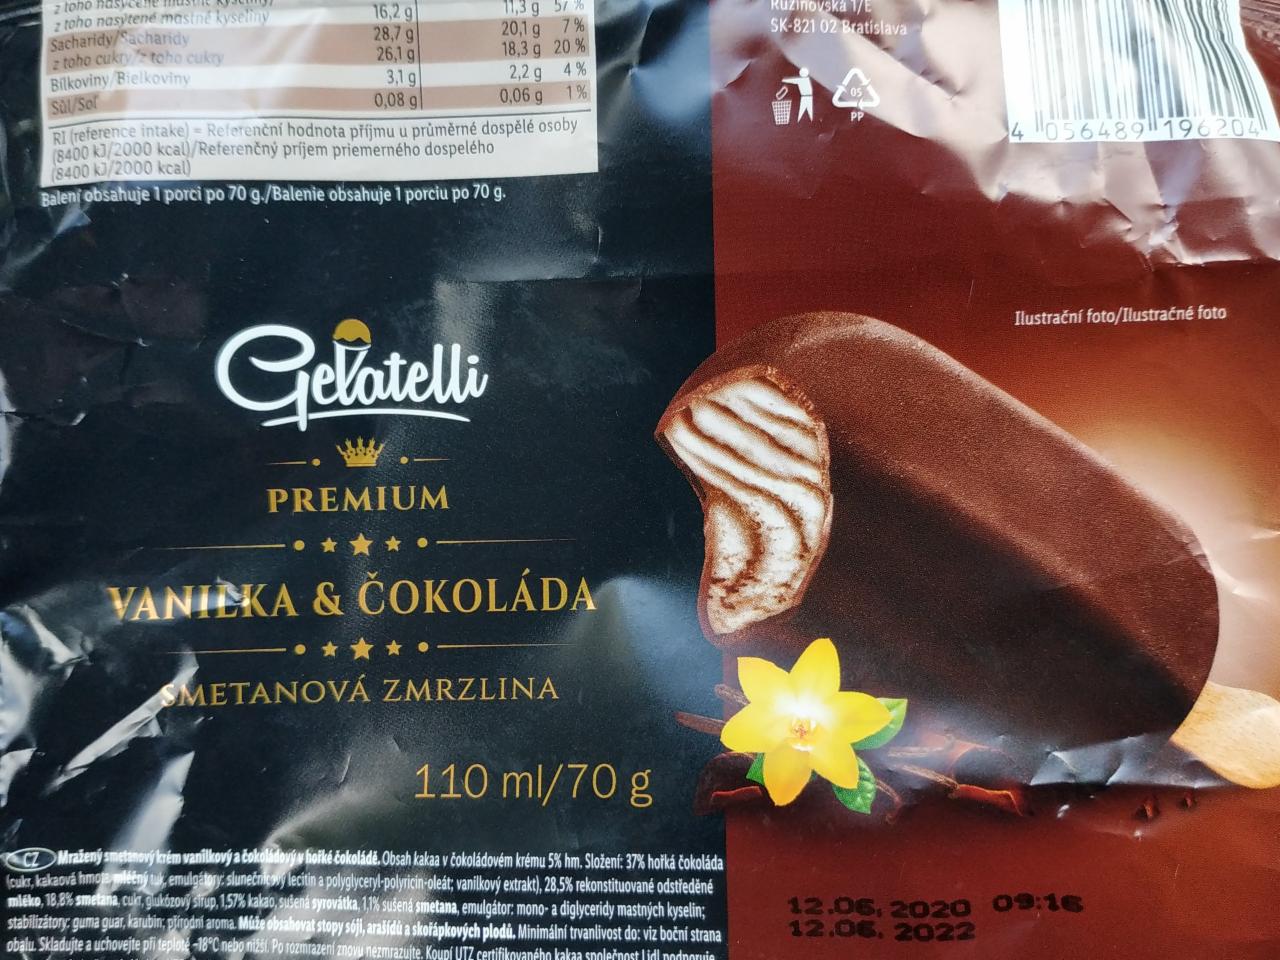 Fotografie - Premium vanilka & čokoláda smetanová zmrzlina Gelatelli